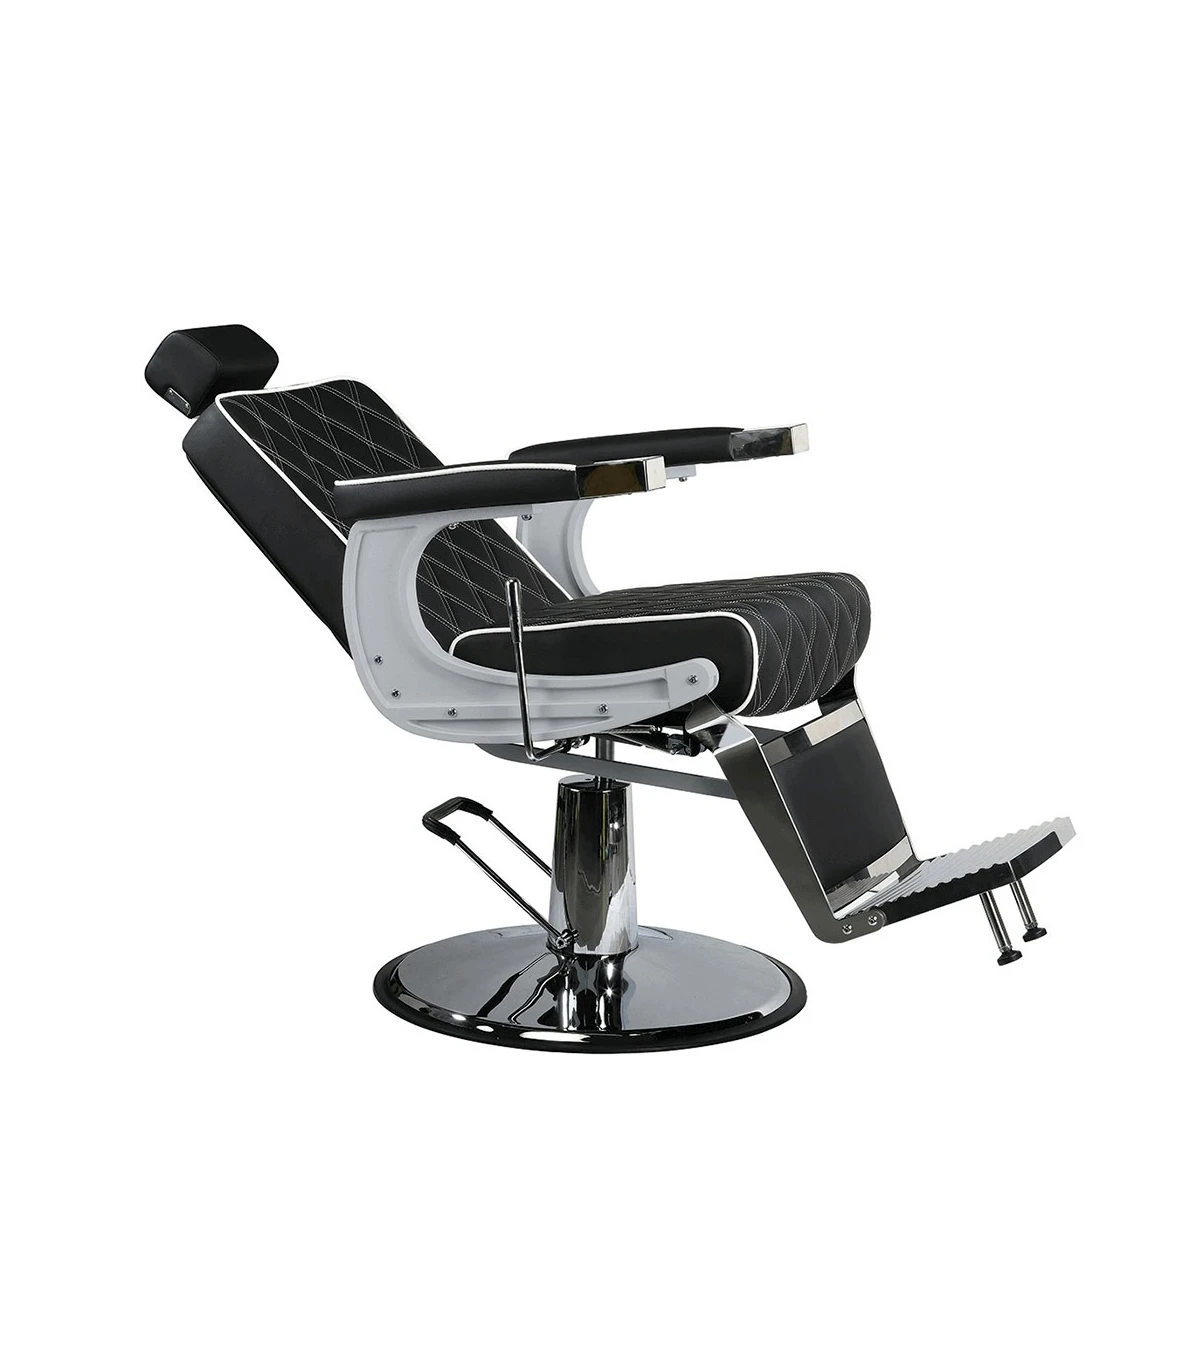 Cadeira de barbeiro hidráulica estilo retro vintage clássico Kirk